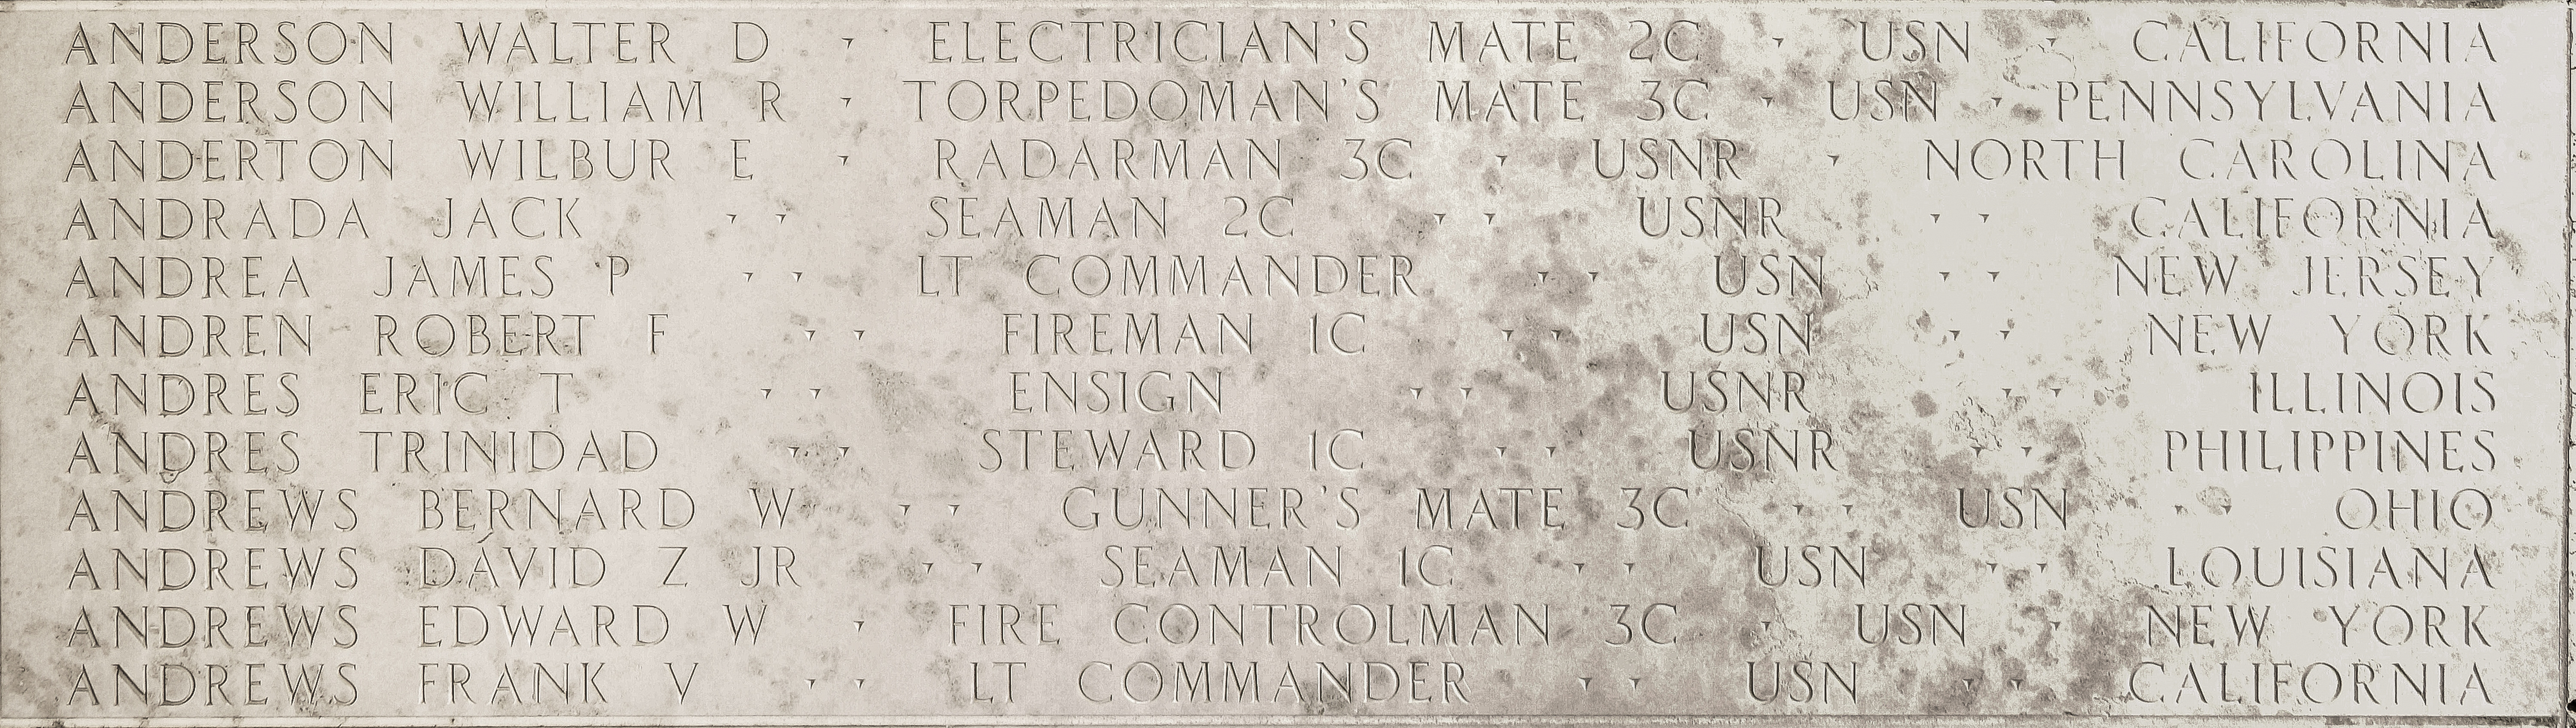 Edward W. Andrews, Fire Controlman Third Class